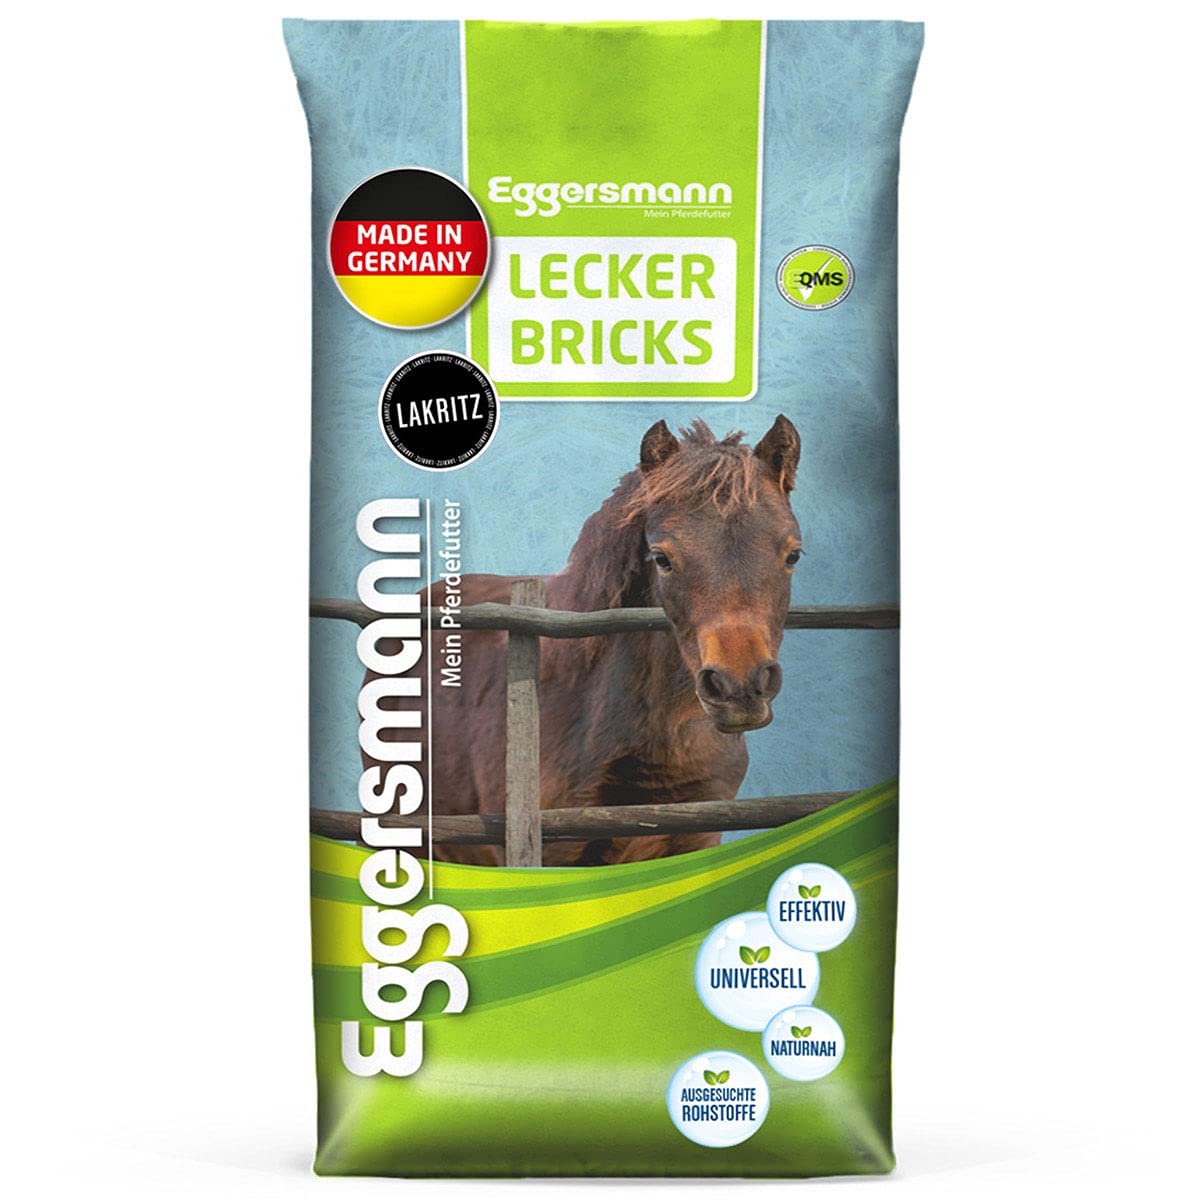 Eggersmann Lecker Bricks Lakritz – Pferdeleckerlis Lakritz – Leckerlies für Pferde und Ponies – 25 kg Sack